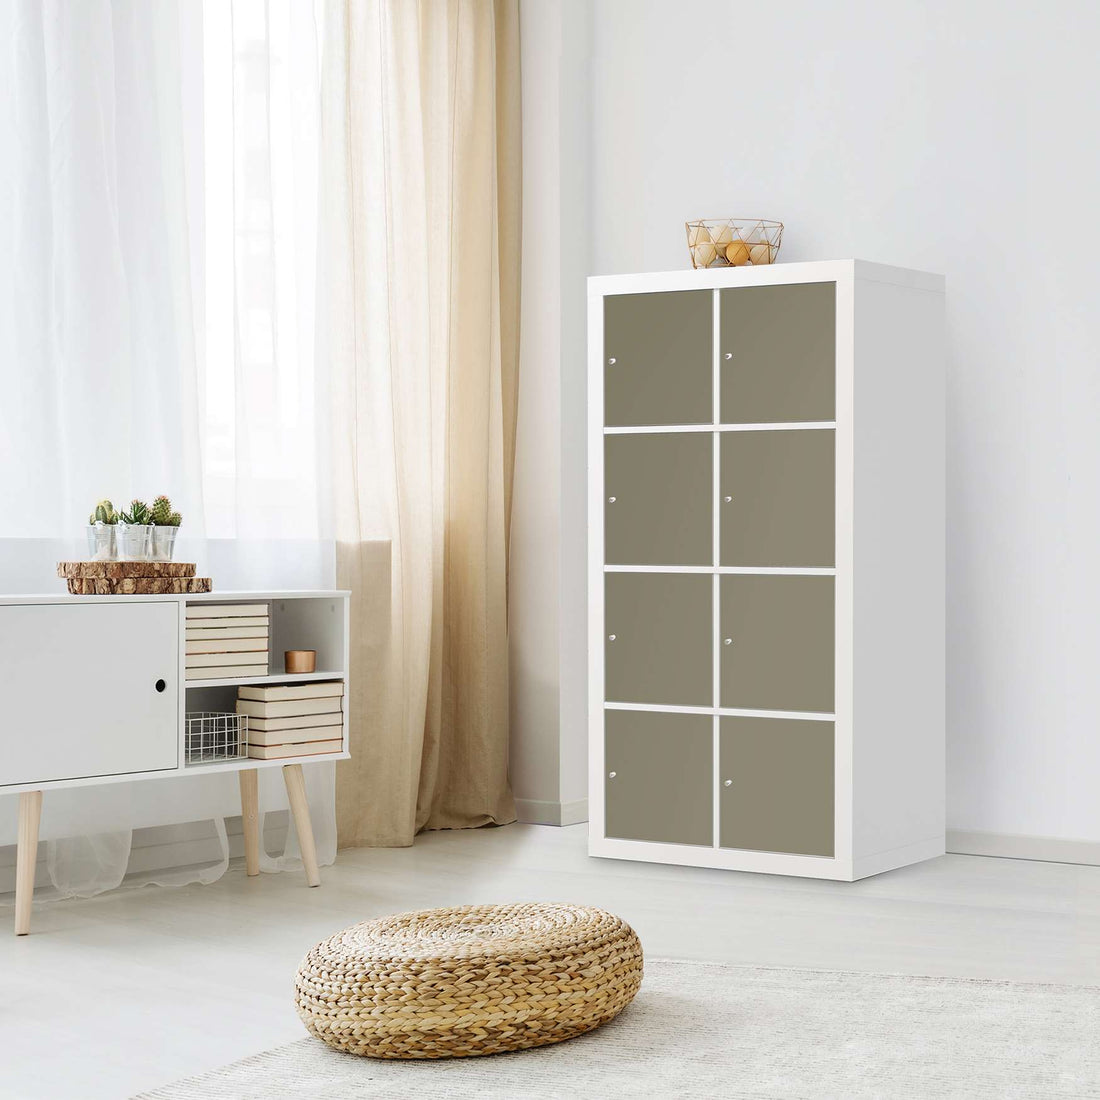 Folie für Möbel Braungrau Light - IKEA Kallax Regal 8 Türen - Wohnzimmer